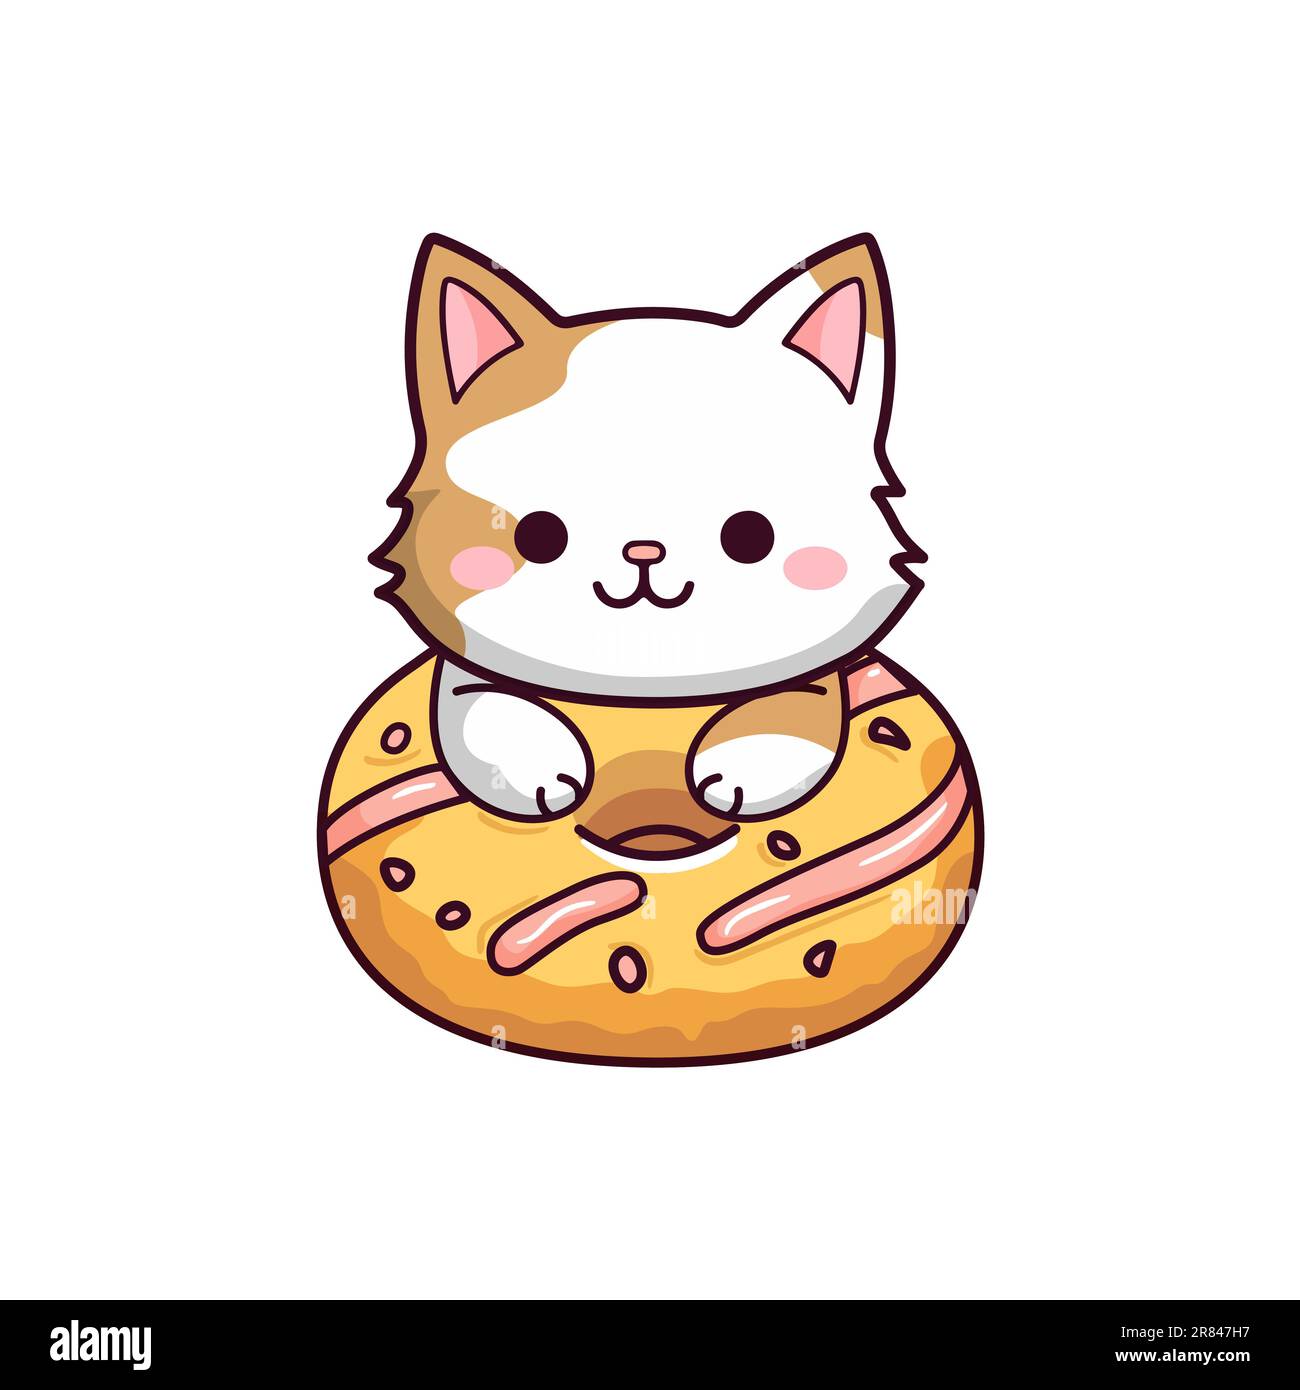 Cutebaby kitten with donut. Kids illustration. Stock Vector